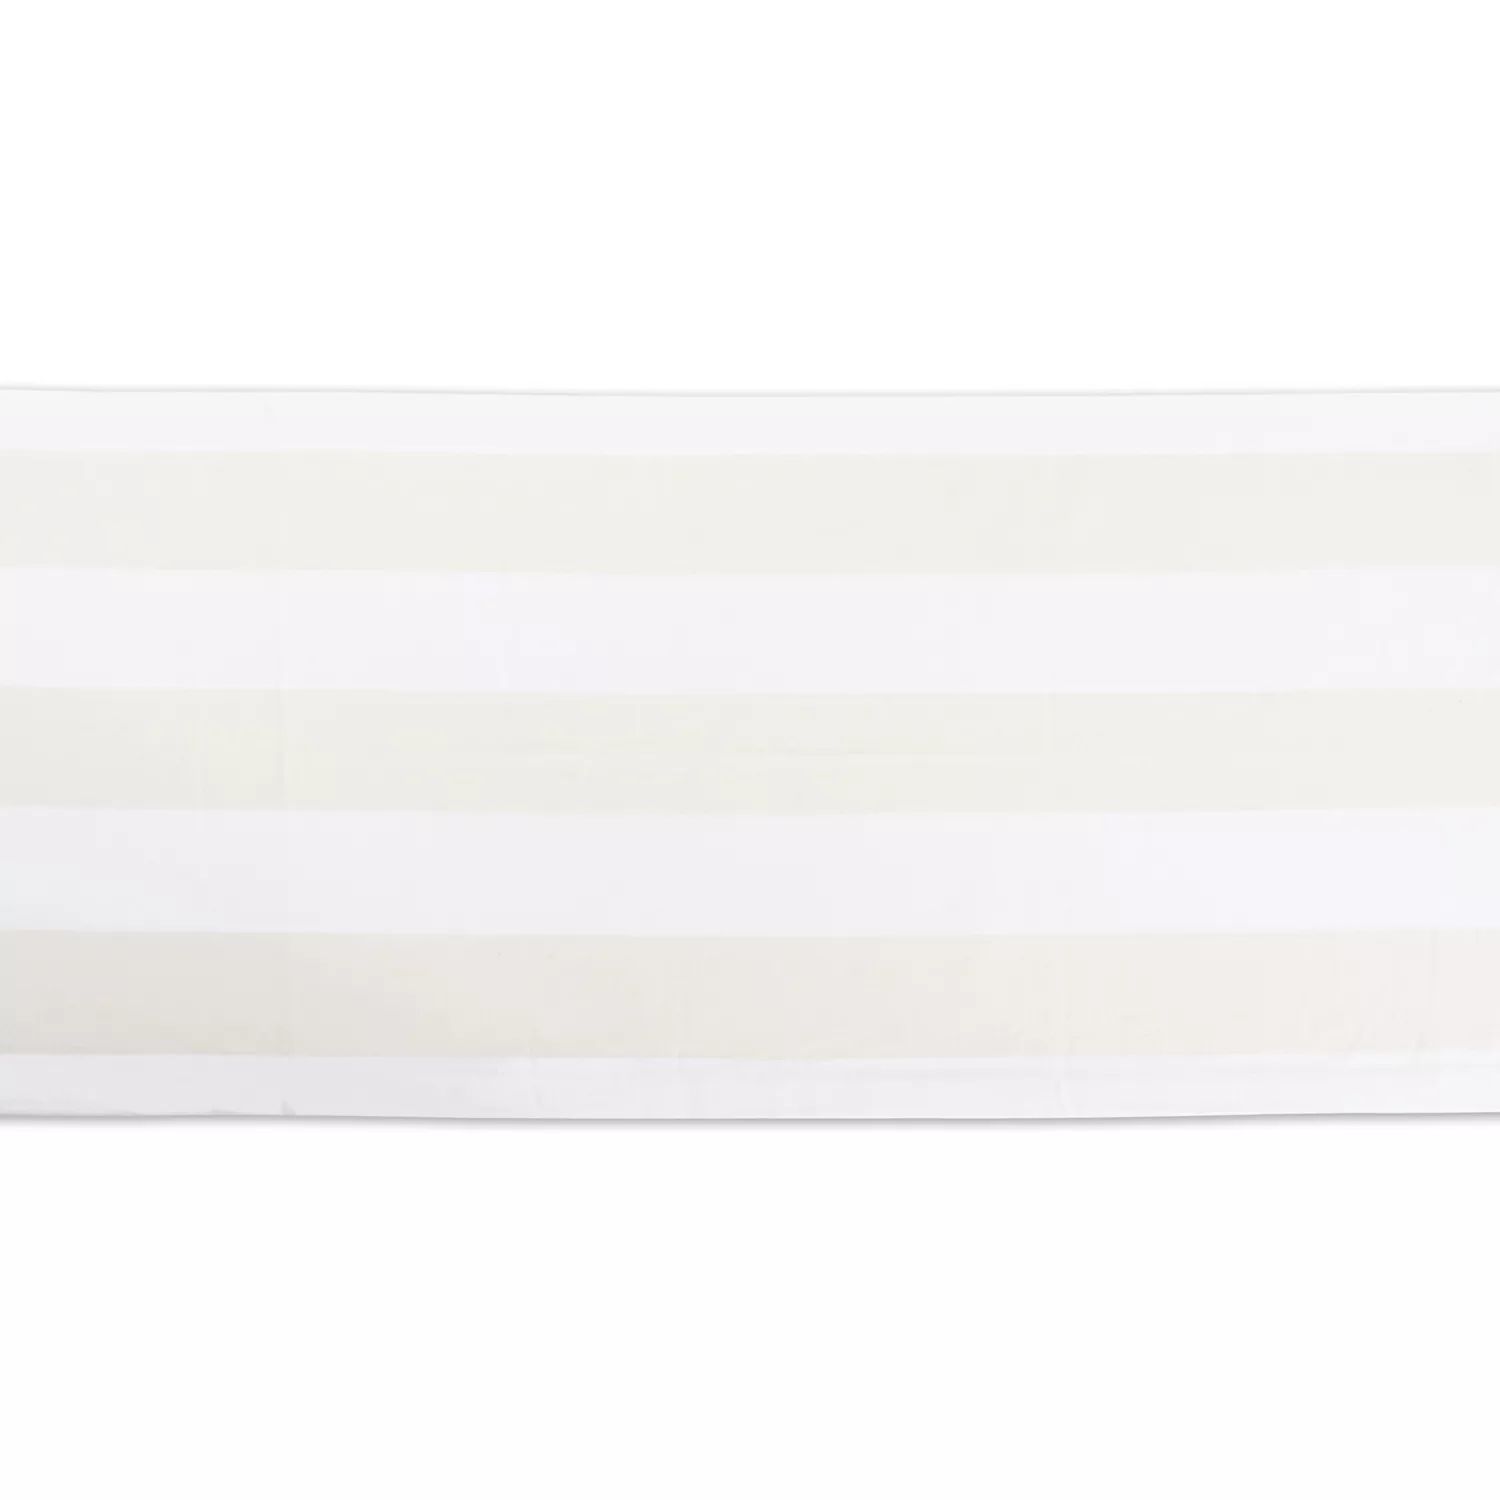 Прямоугольная дорожка для стола 108 дюймов цвета слоновой кости и в белую полоску